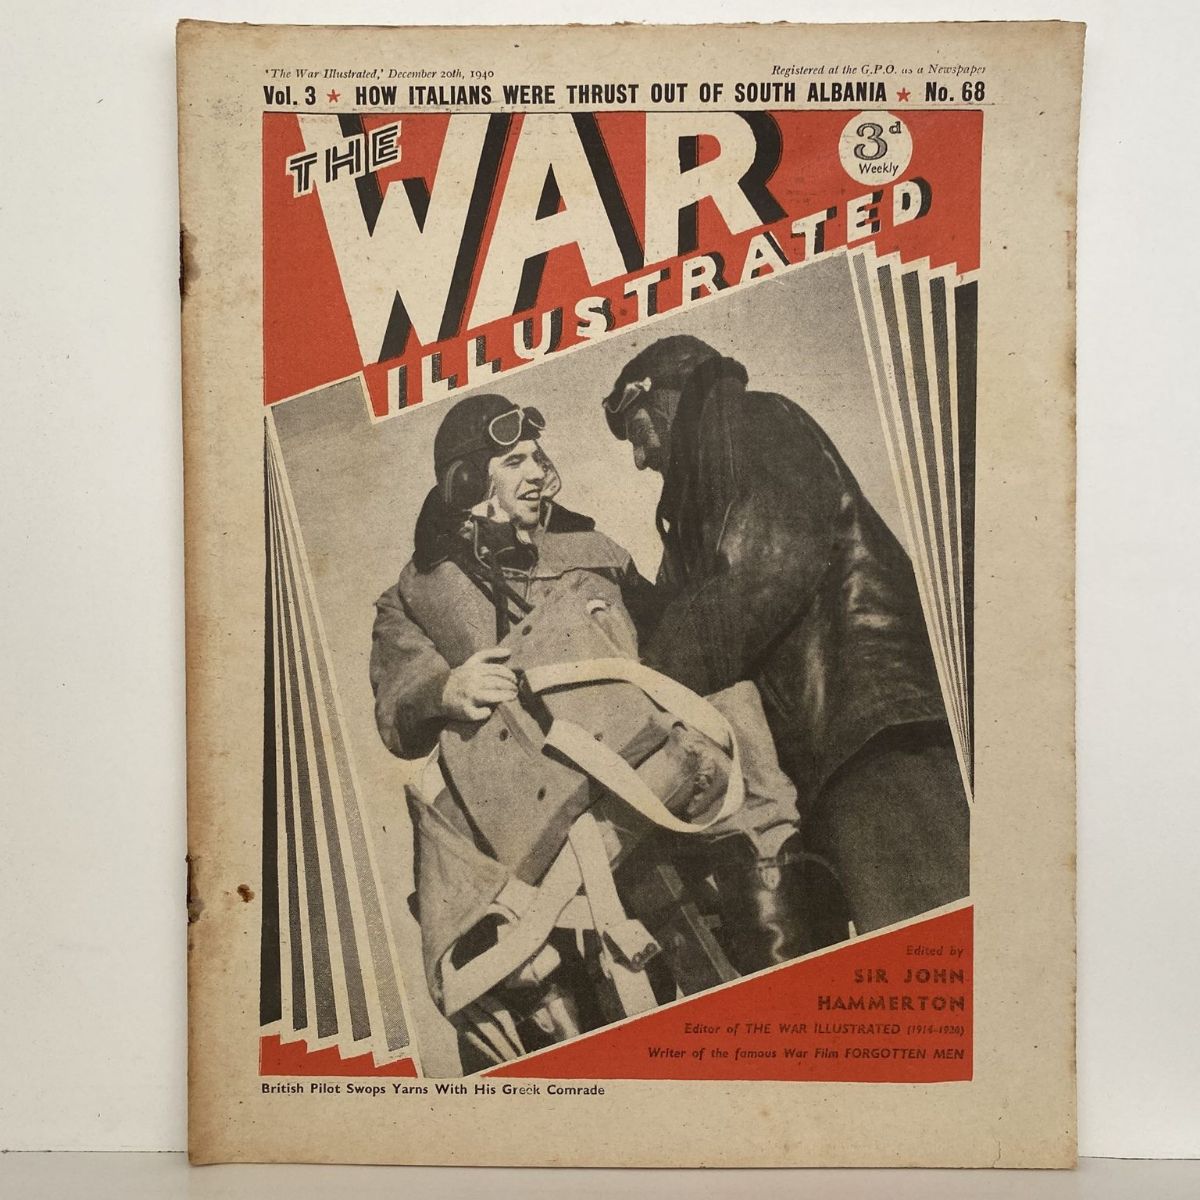 THE WAR ILLUSTRATED - Vol 3, No 68, 20th Dec 1940